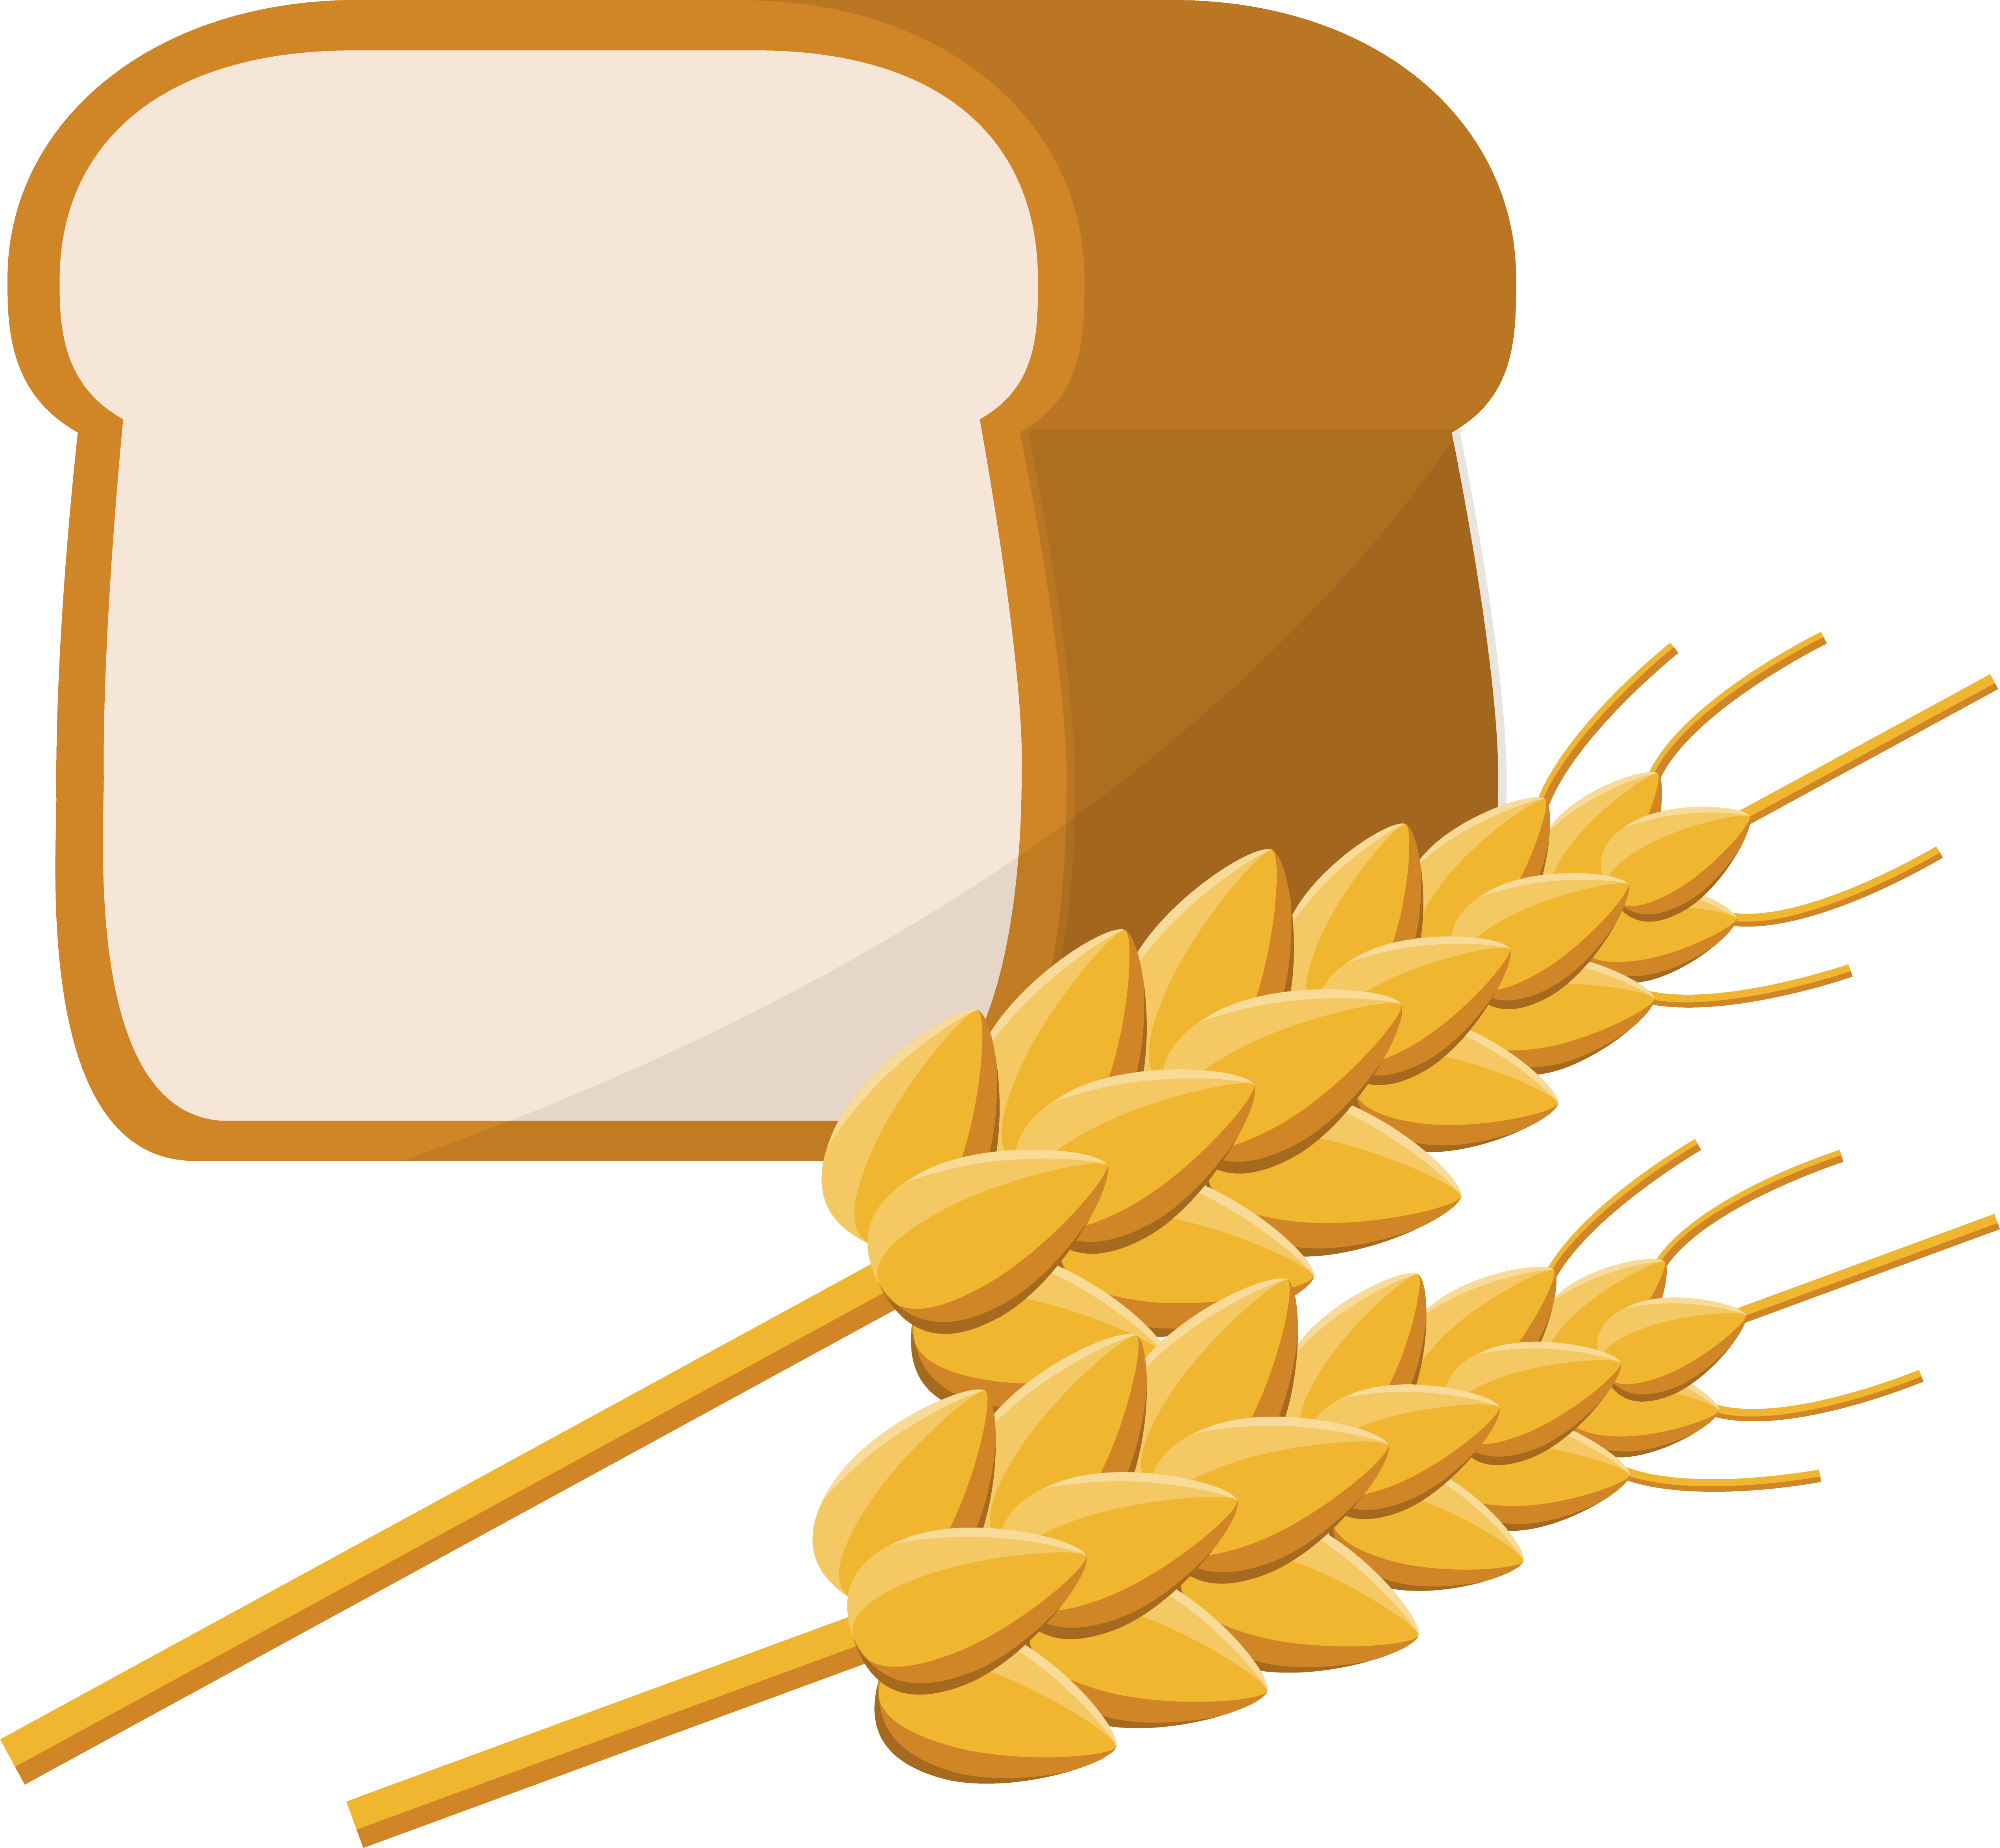 パン祖のパン祭り